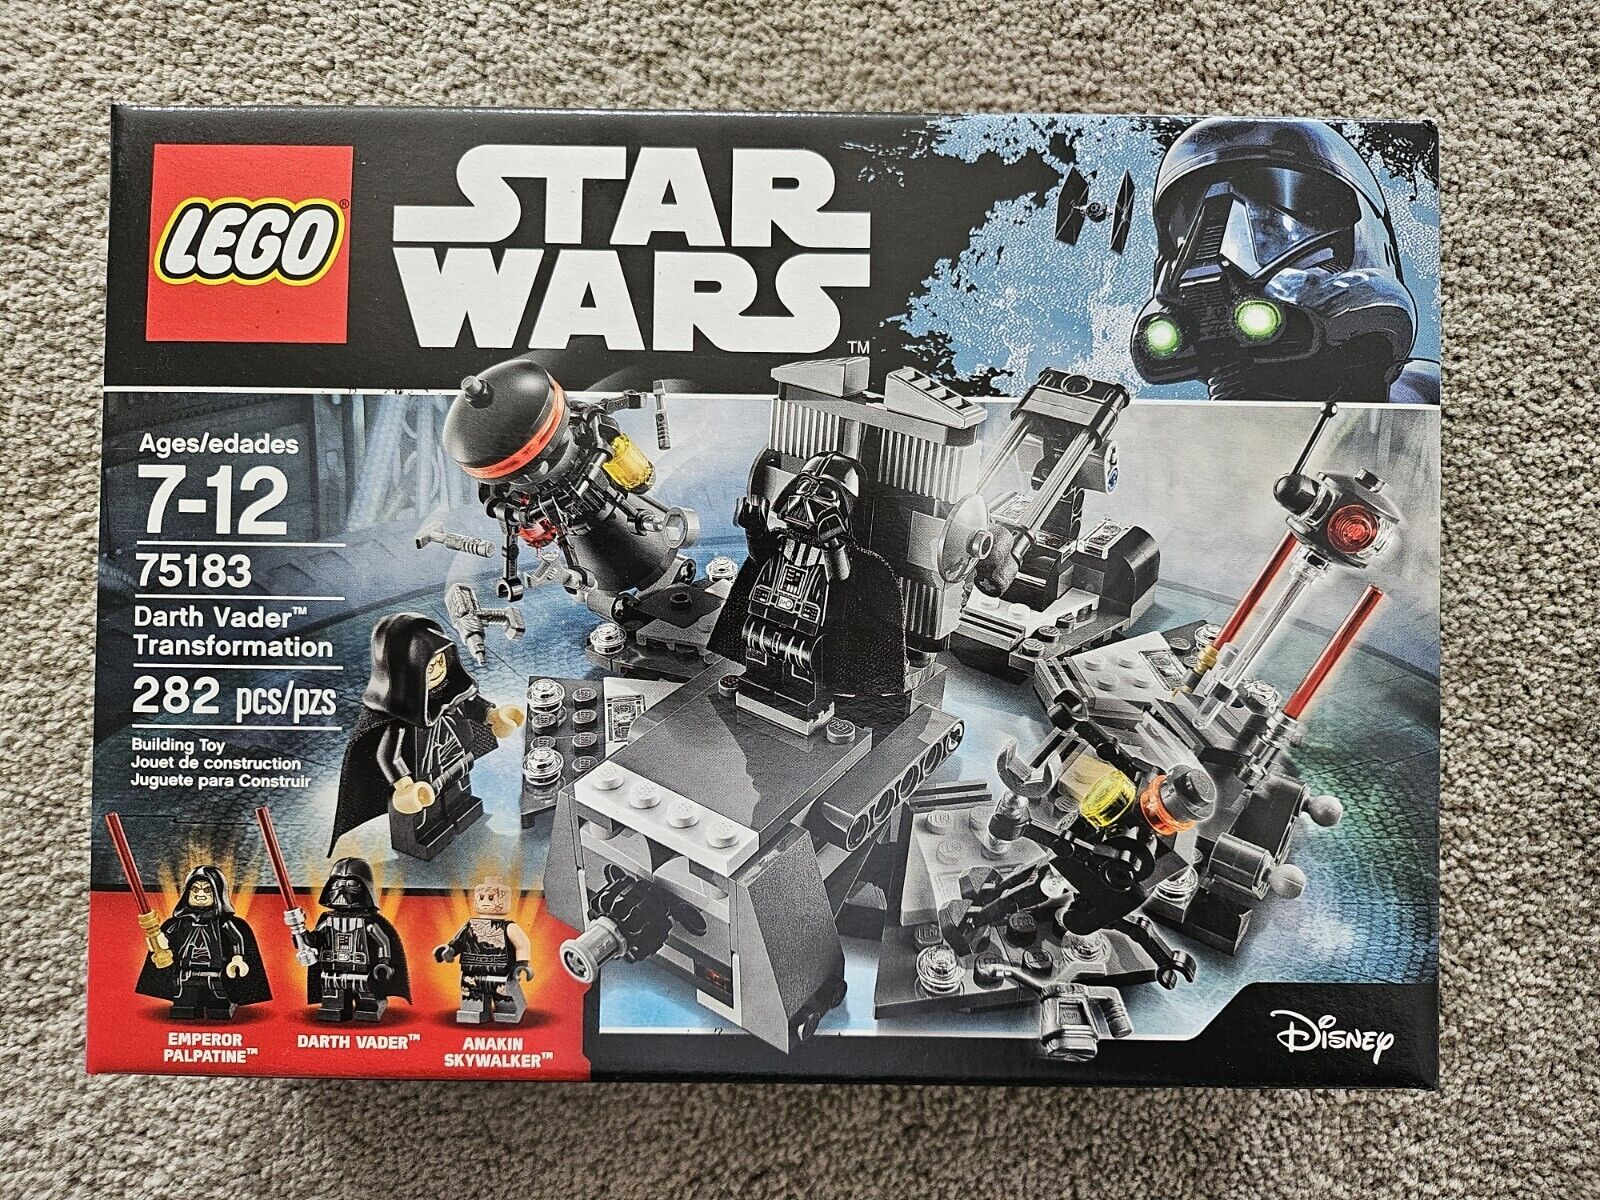 Star Wars Lego 75183 Darth Vader Transformation New & Sealed 